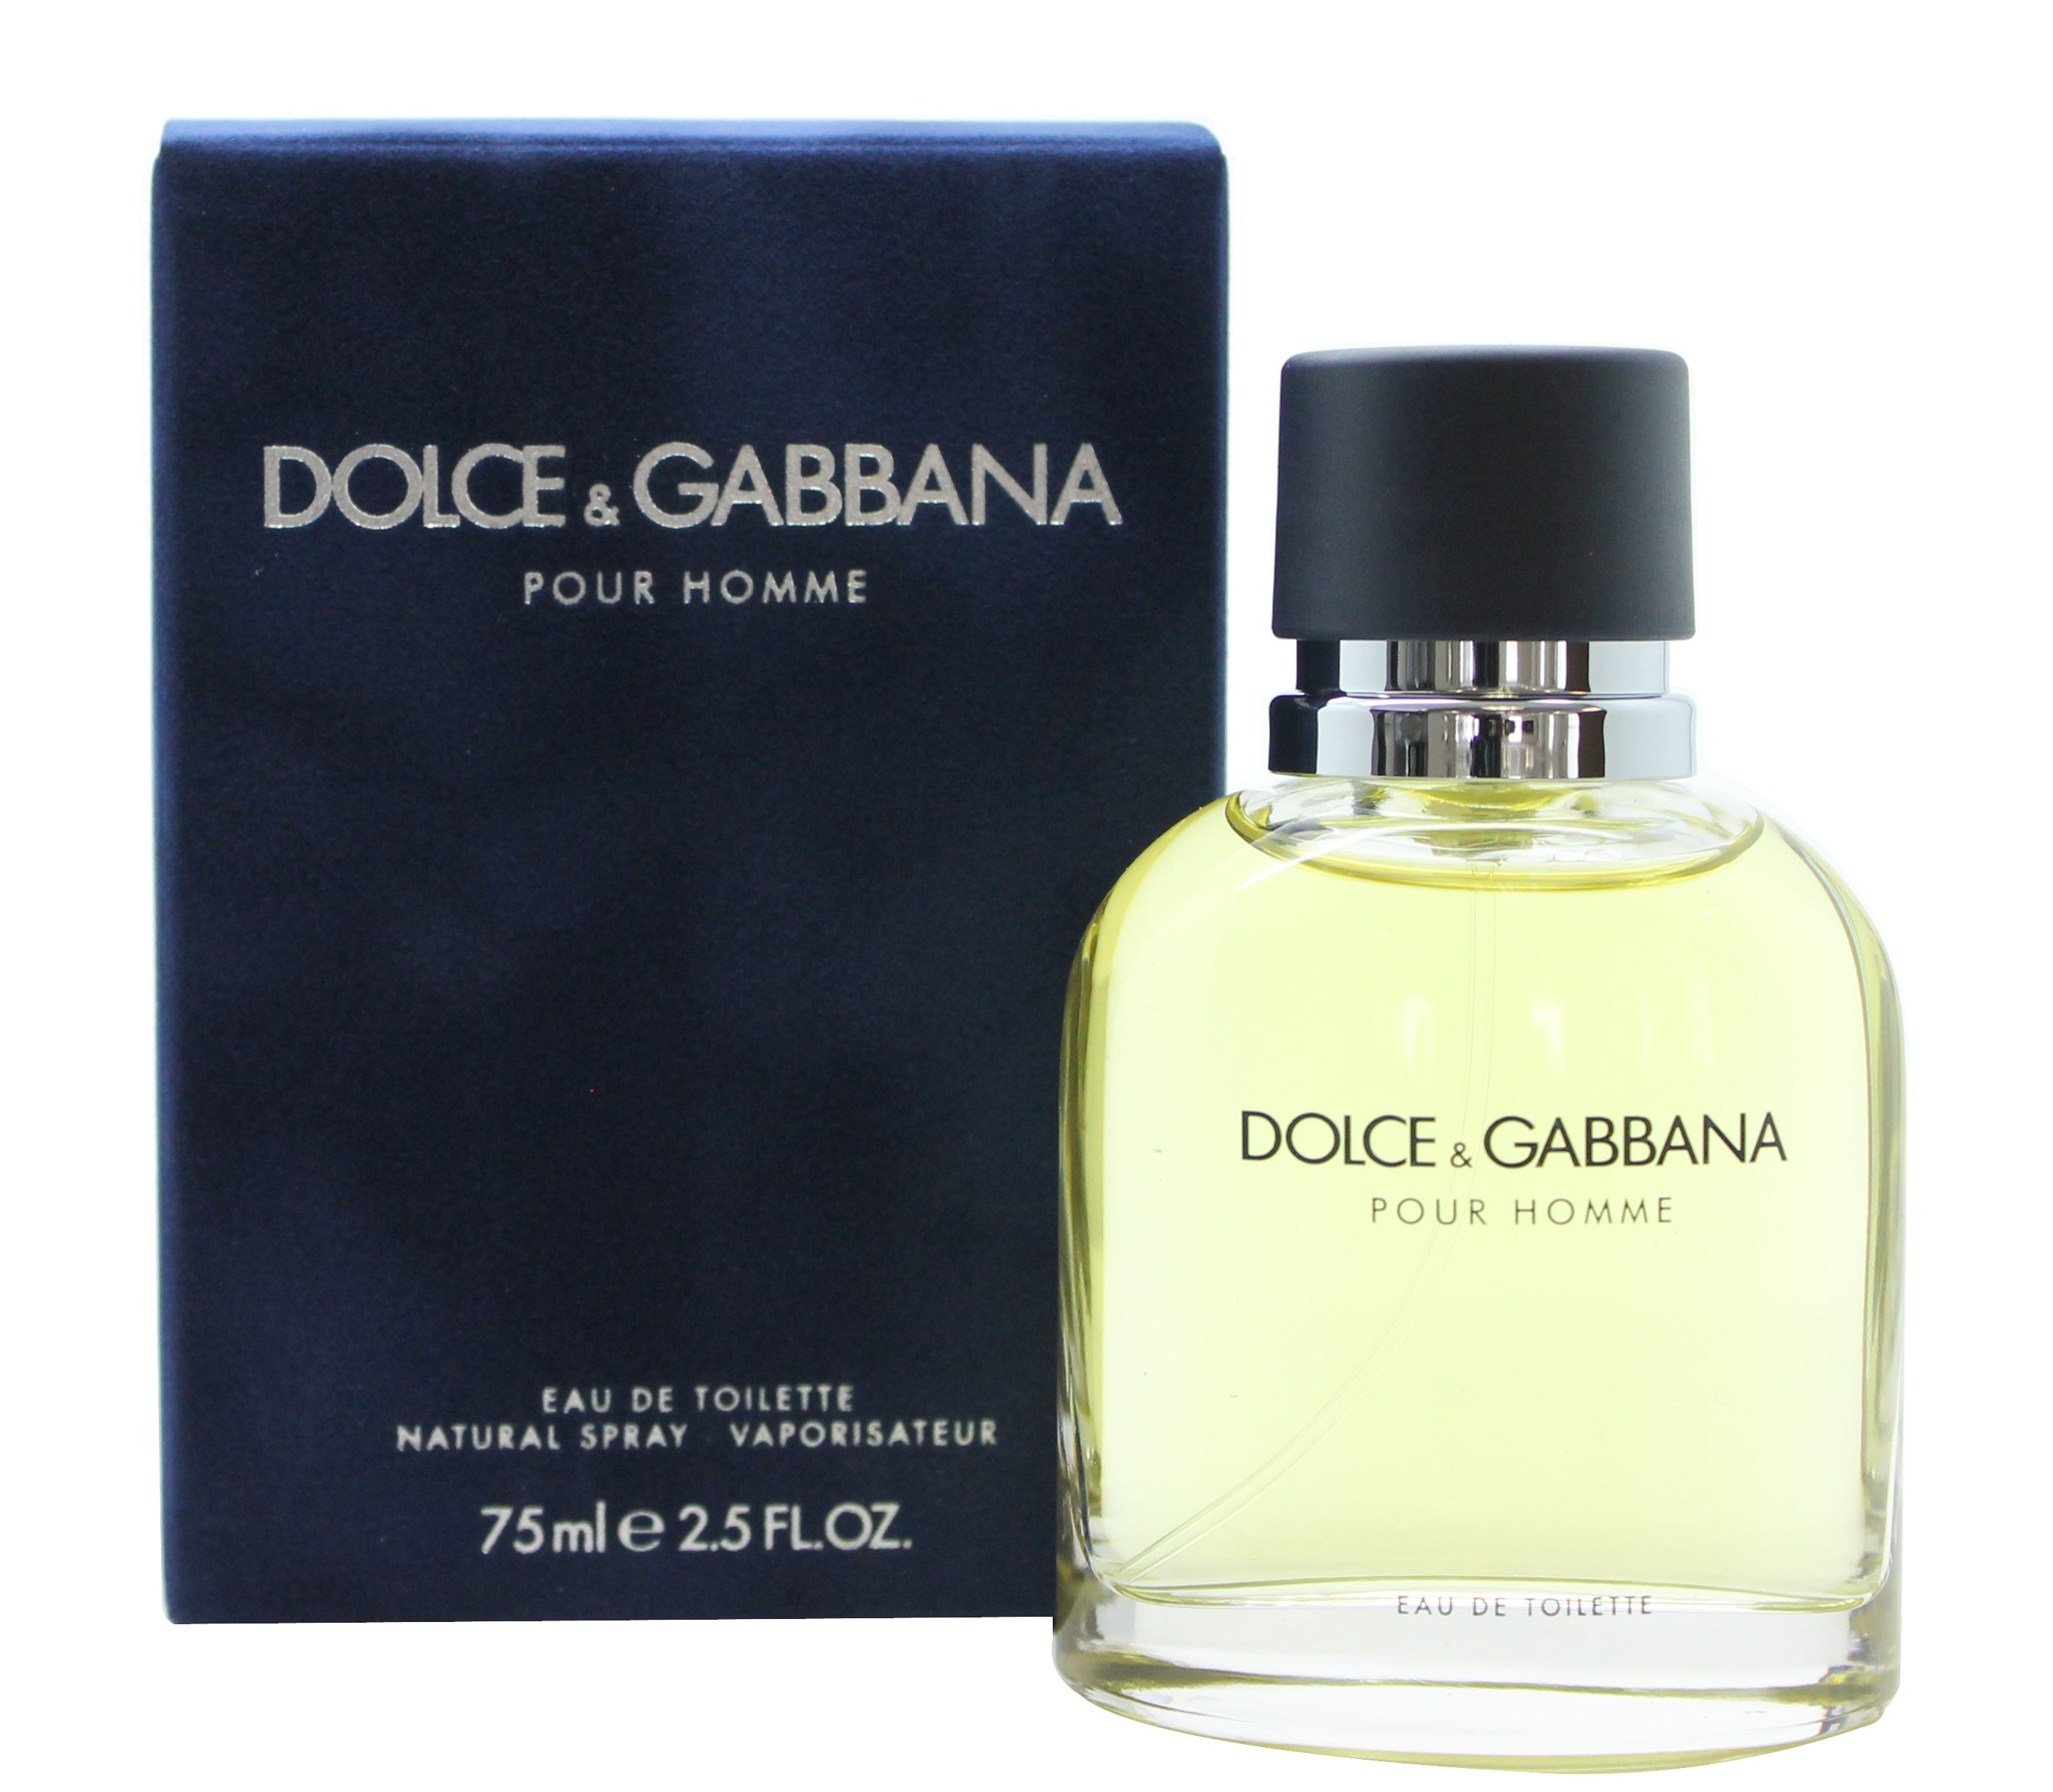 View Dolce Gabbana Pour Homme Eau De Toilette 75ml Spray information